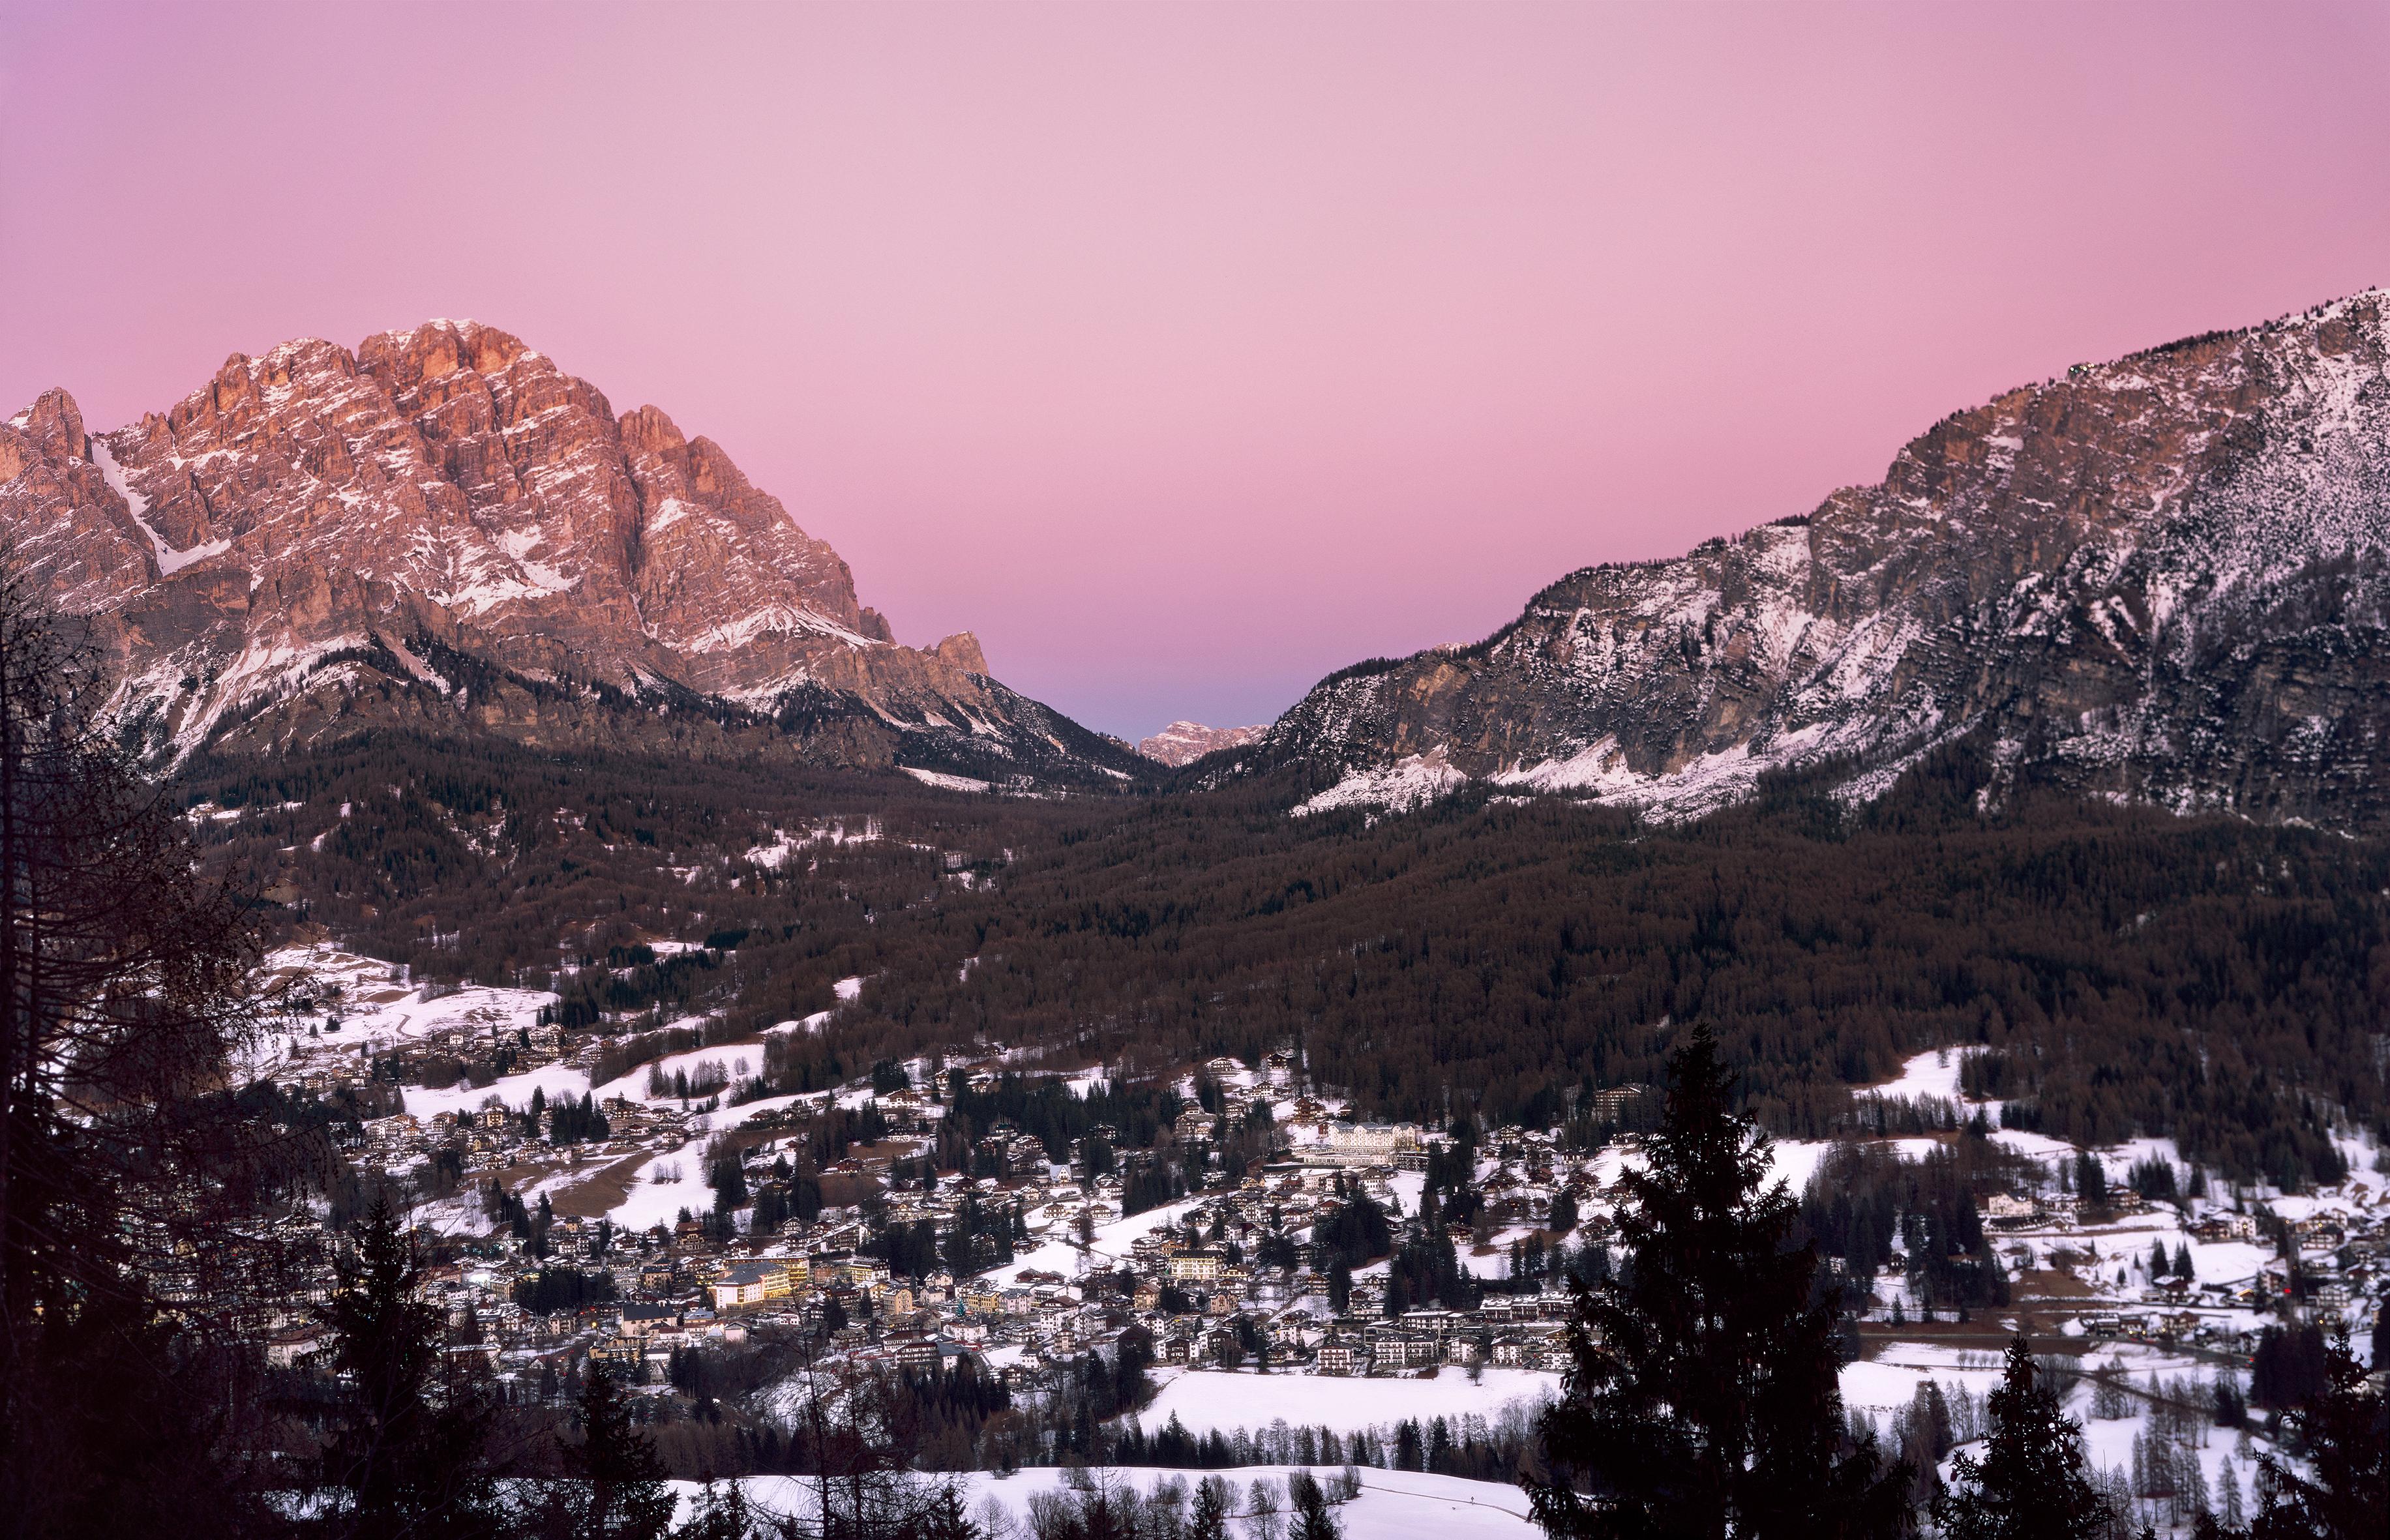 Color Photograph Ugne Pouwell - Cortina d'Ampezzo - Photographie analogique de coucher de soleil sur les Dolomites italiennes